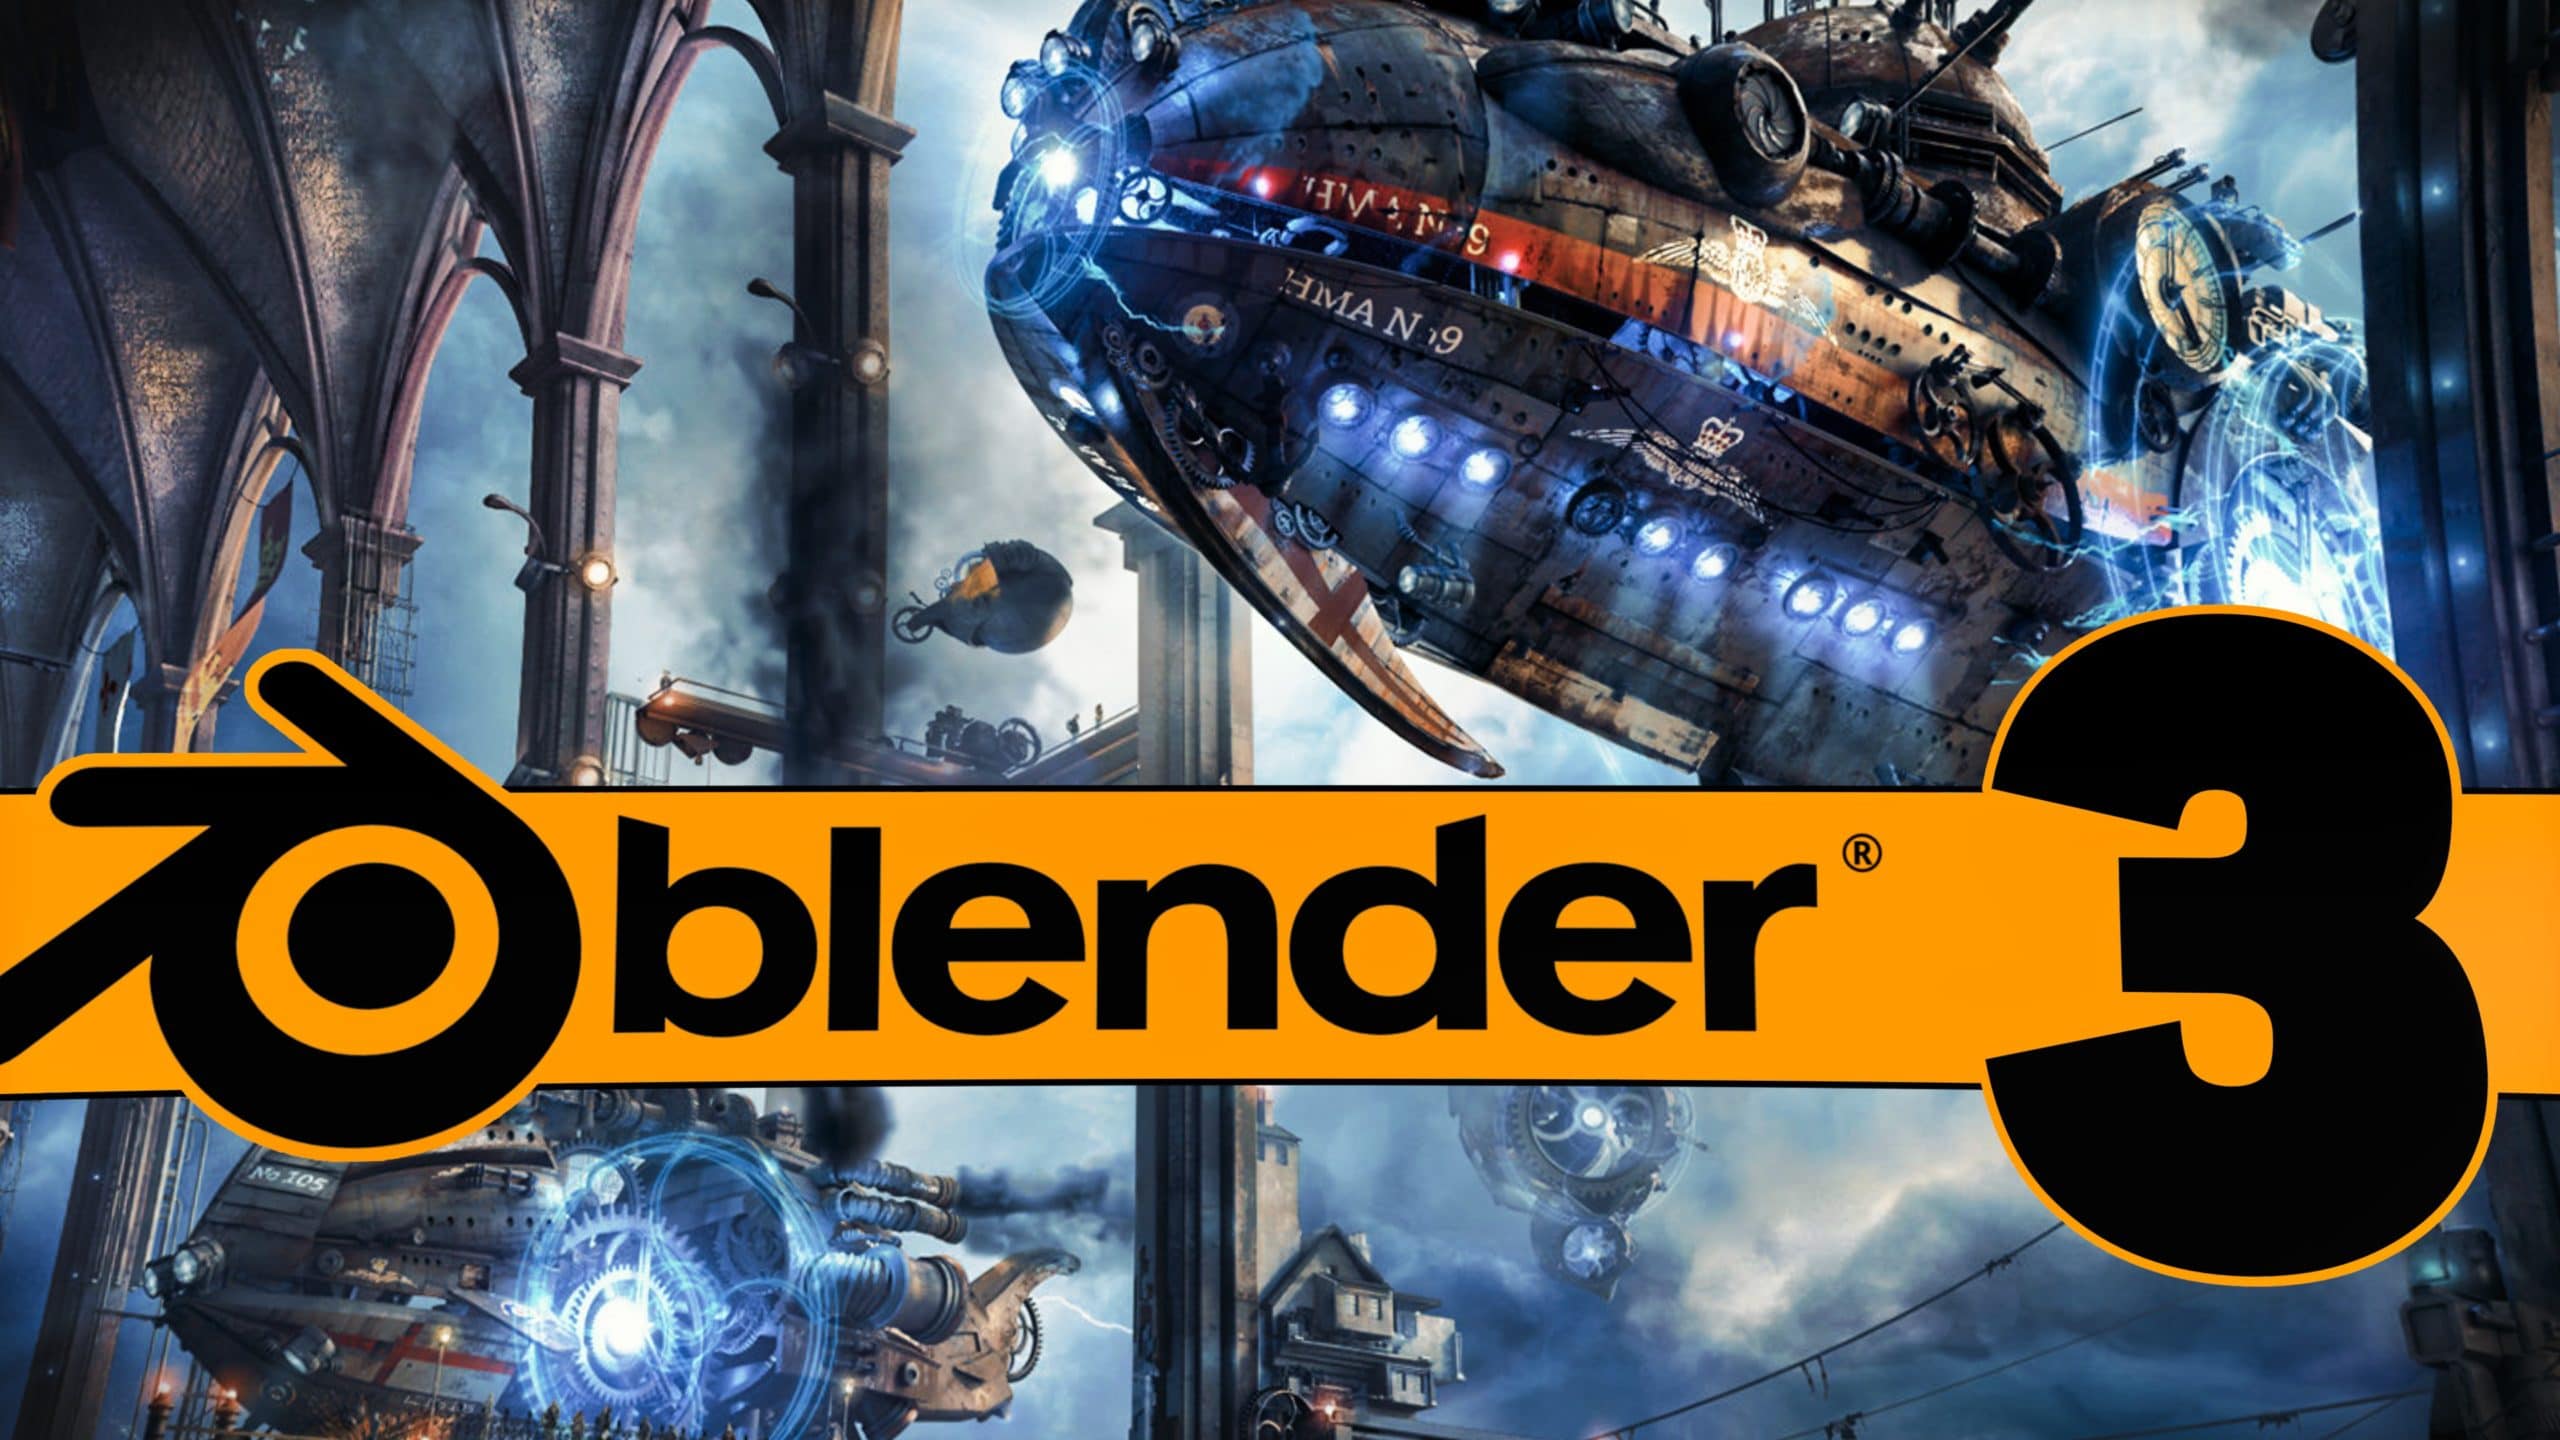 blender 2.8 release date